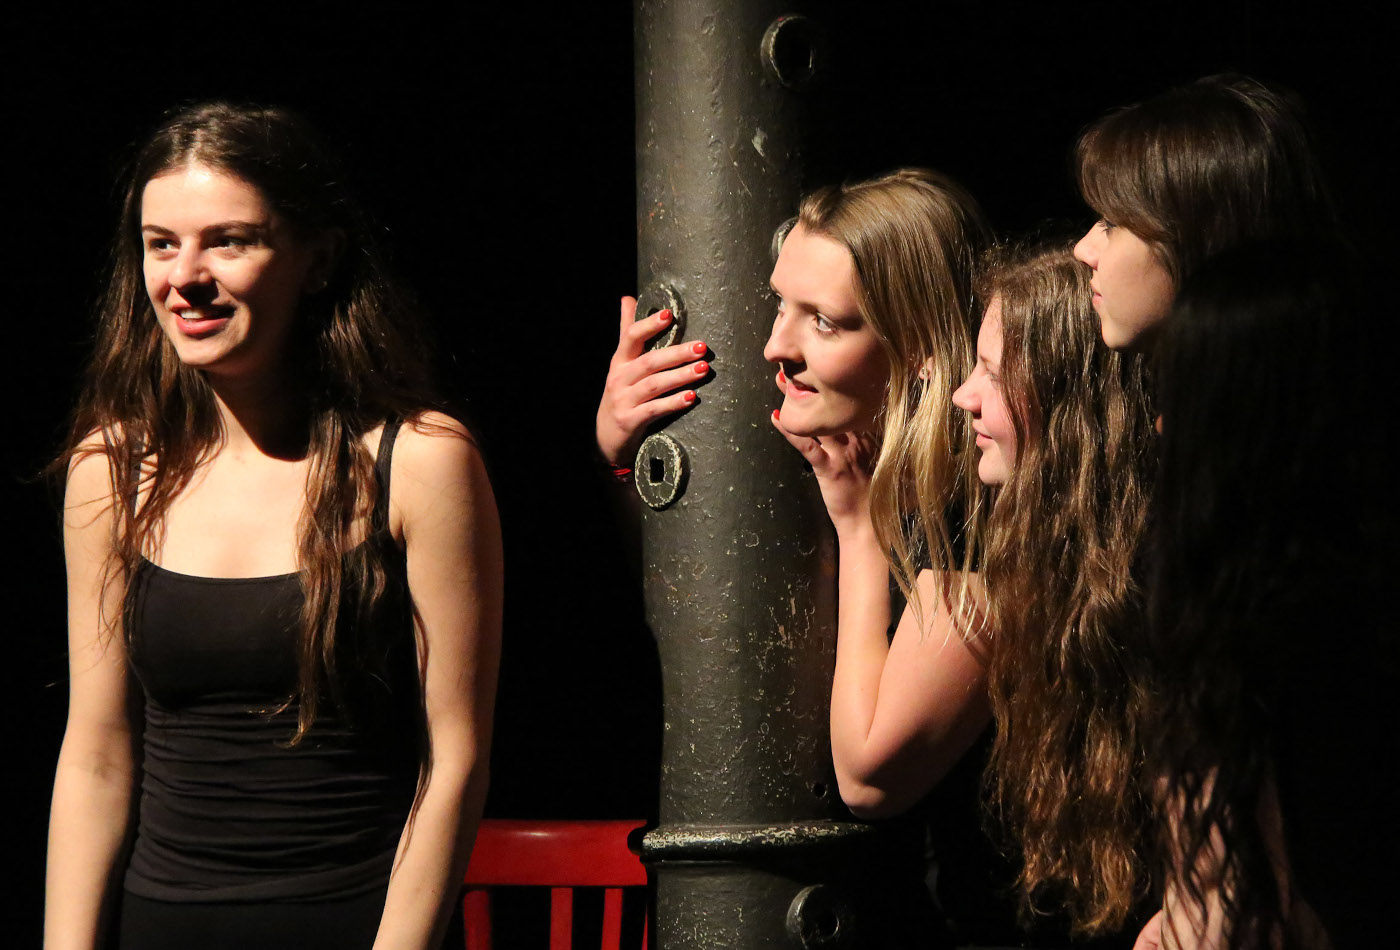 Vier Mädchen stehen auf einer Bühne.